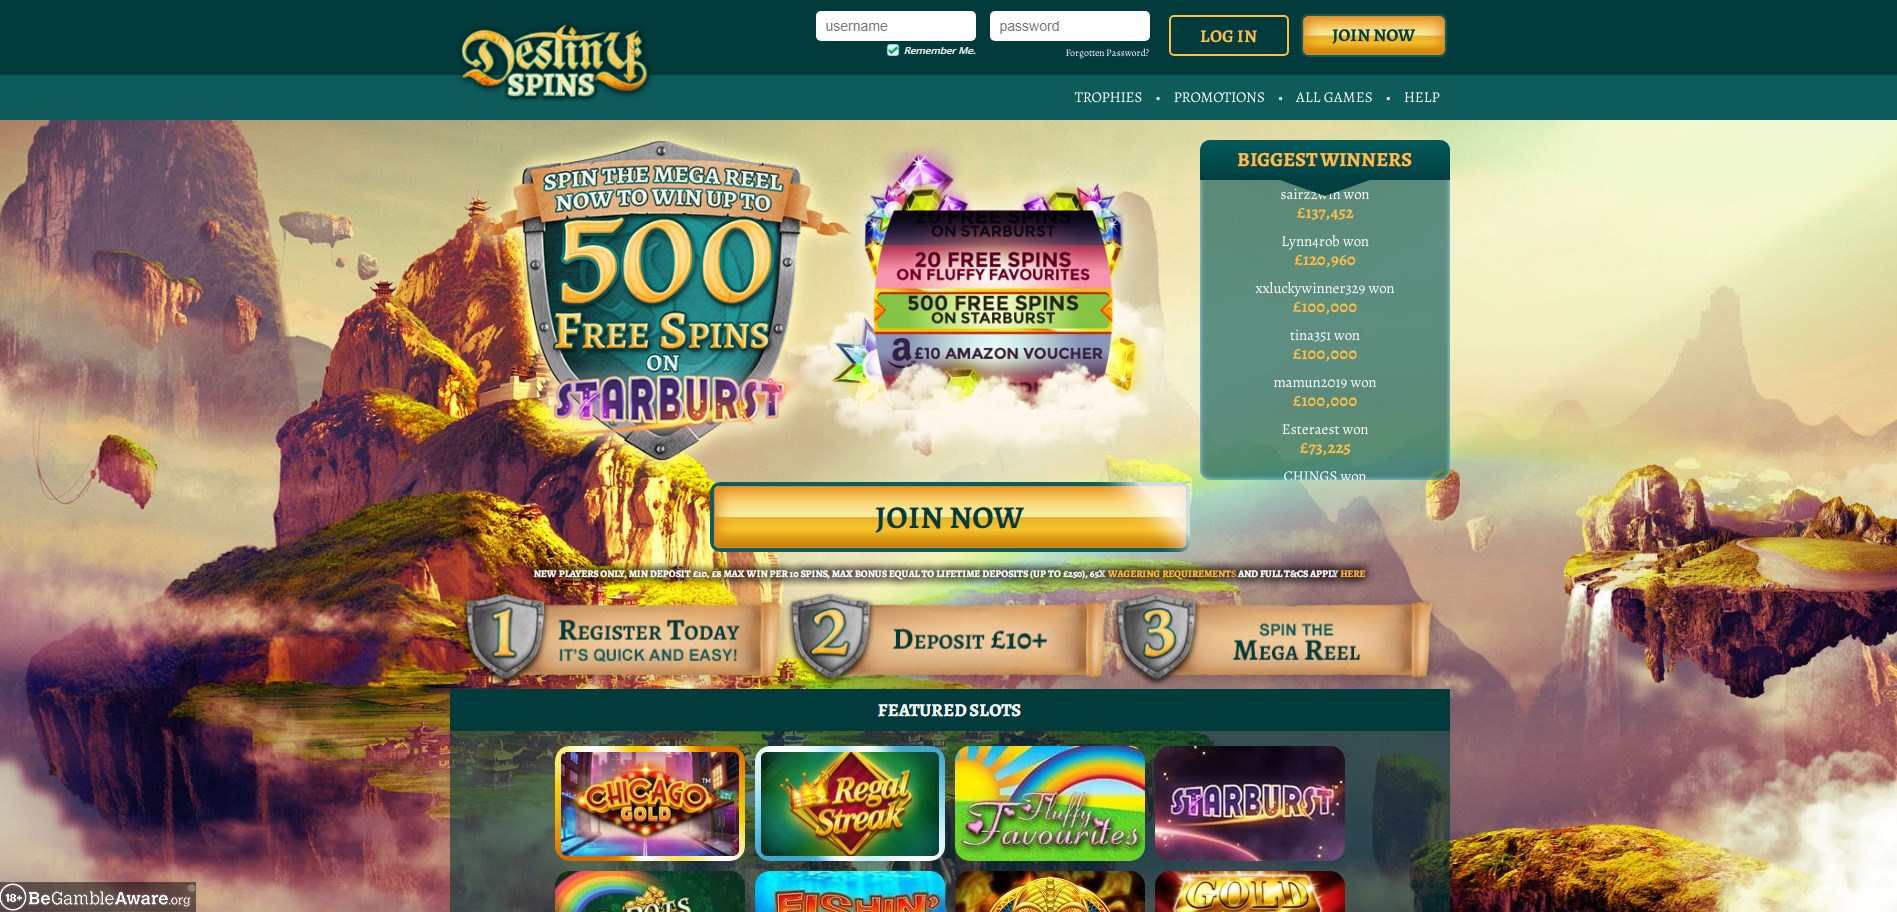 Destiny Spins Casino Review